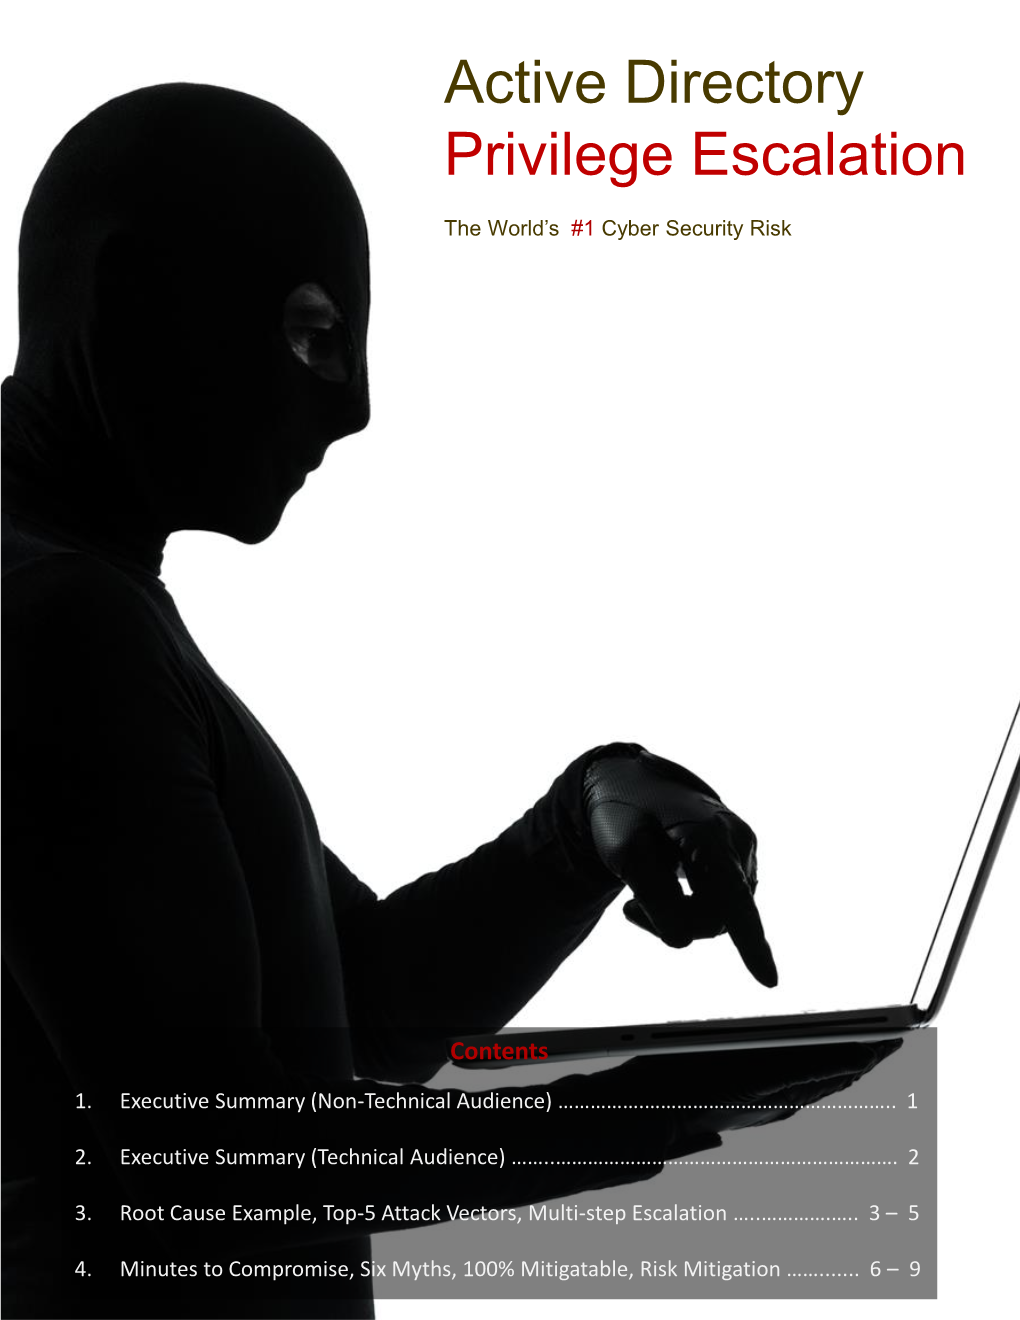 Active Directory Privilege Escalation